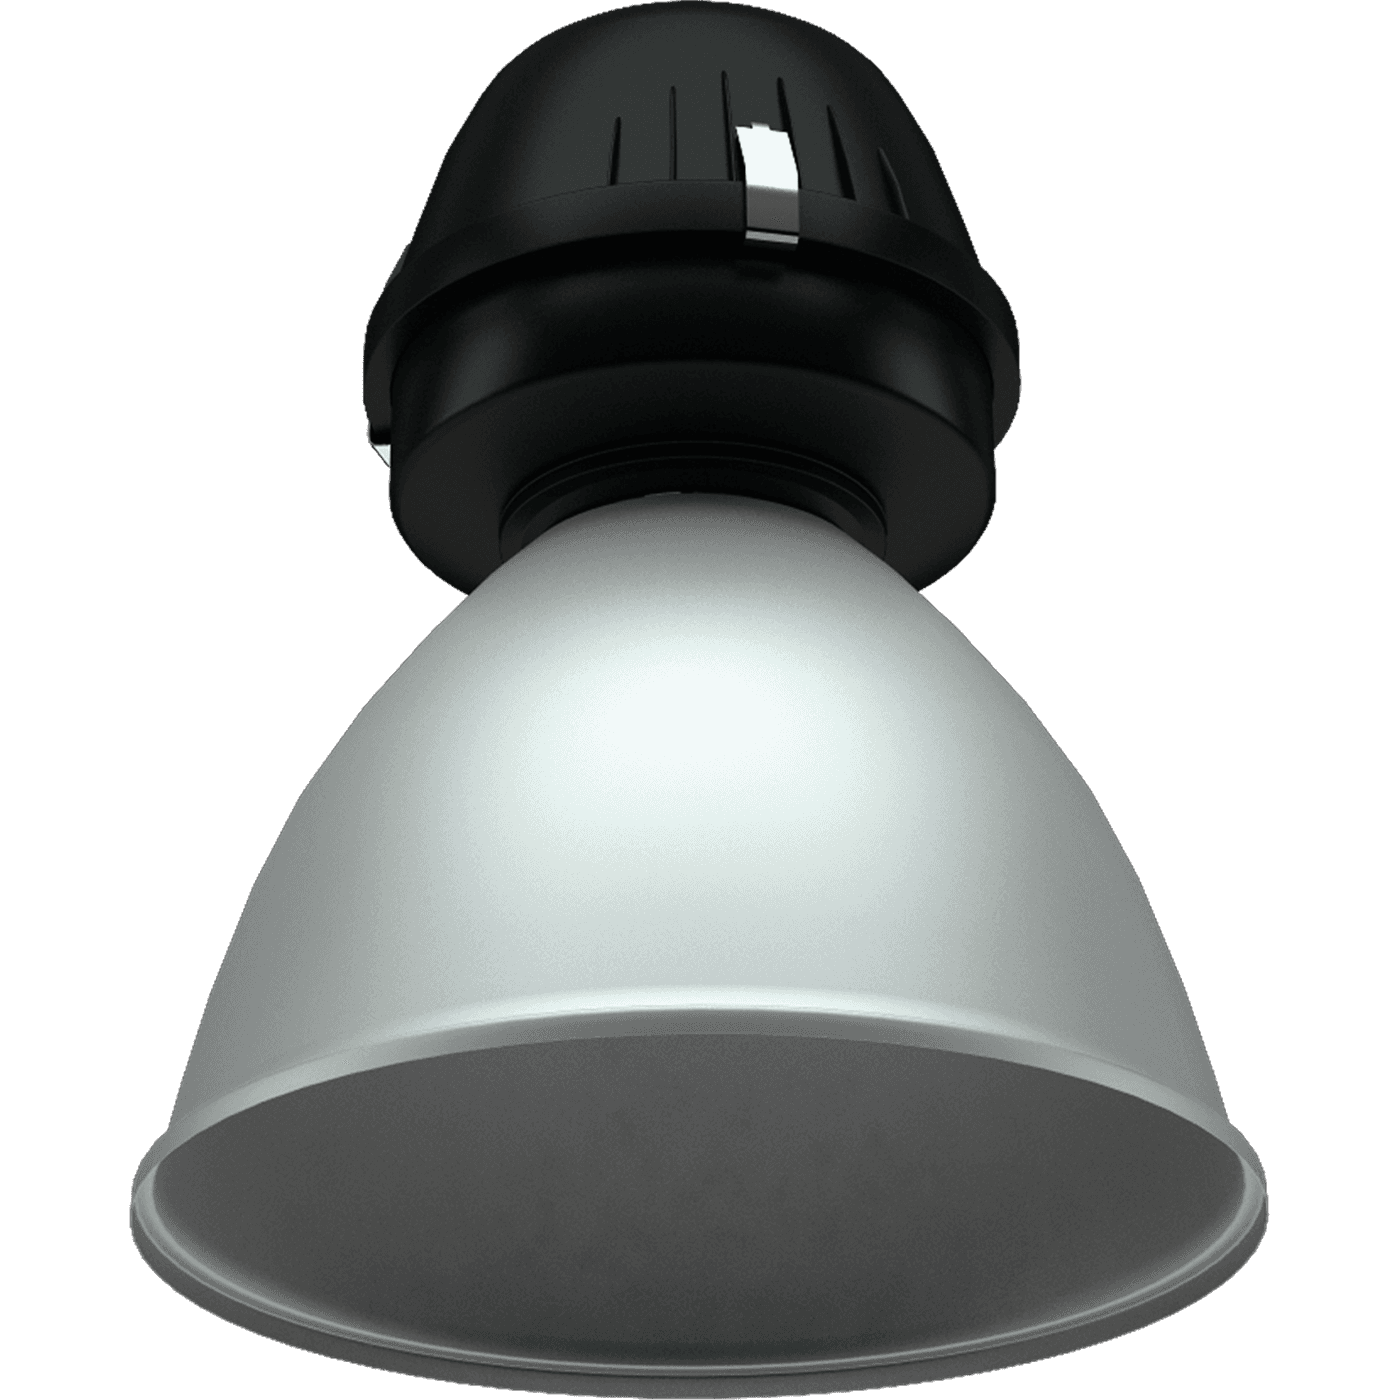 ламповые HBA 250 IP65 SET, артикул 1311000090